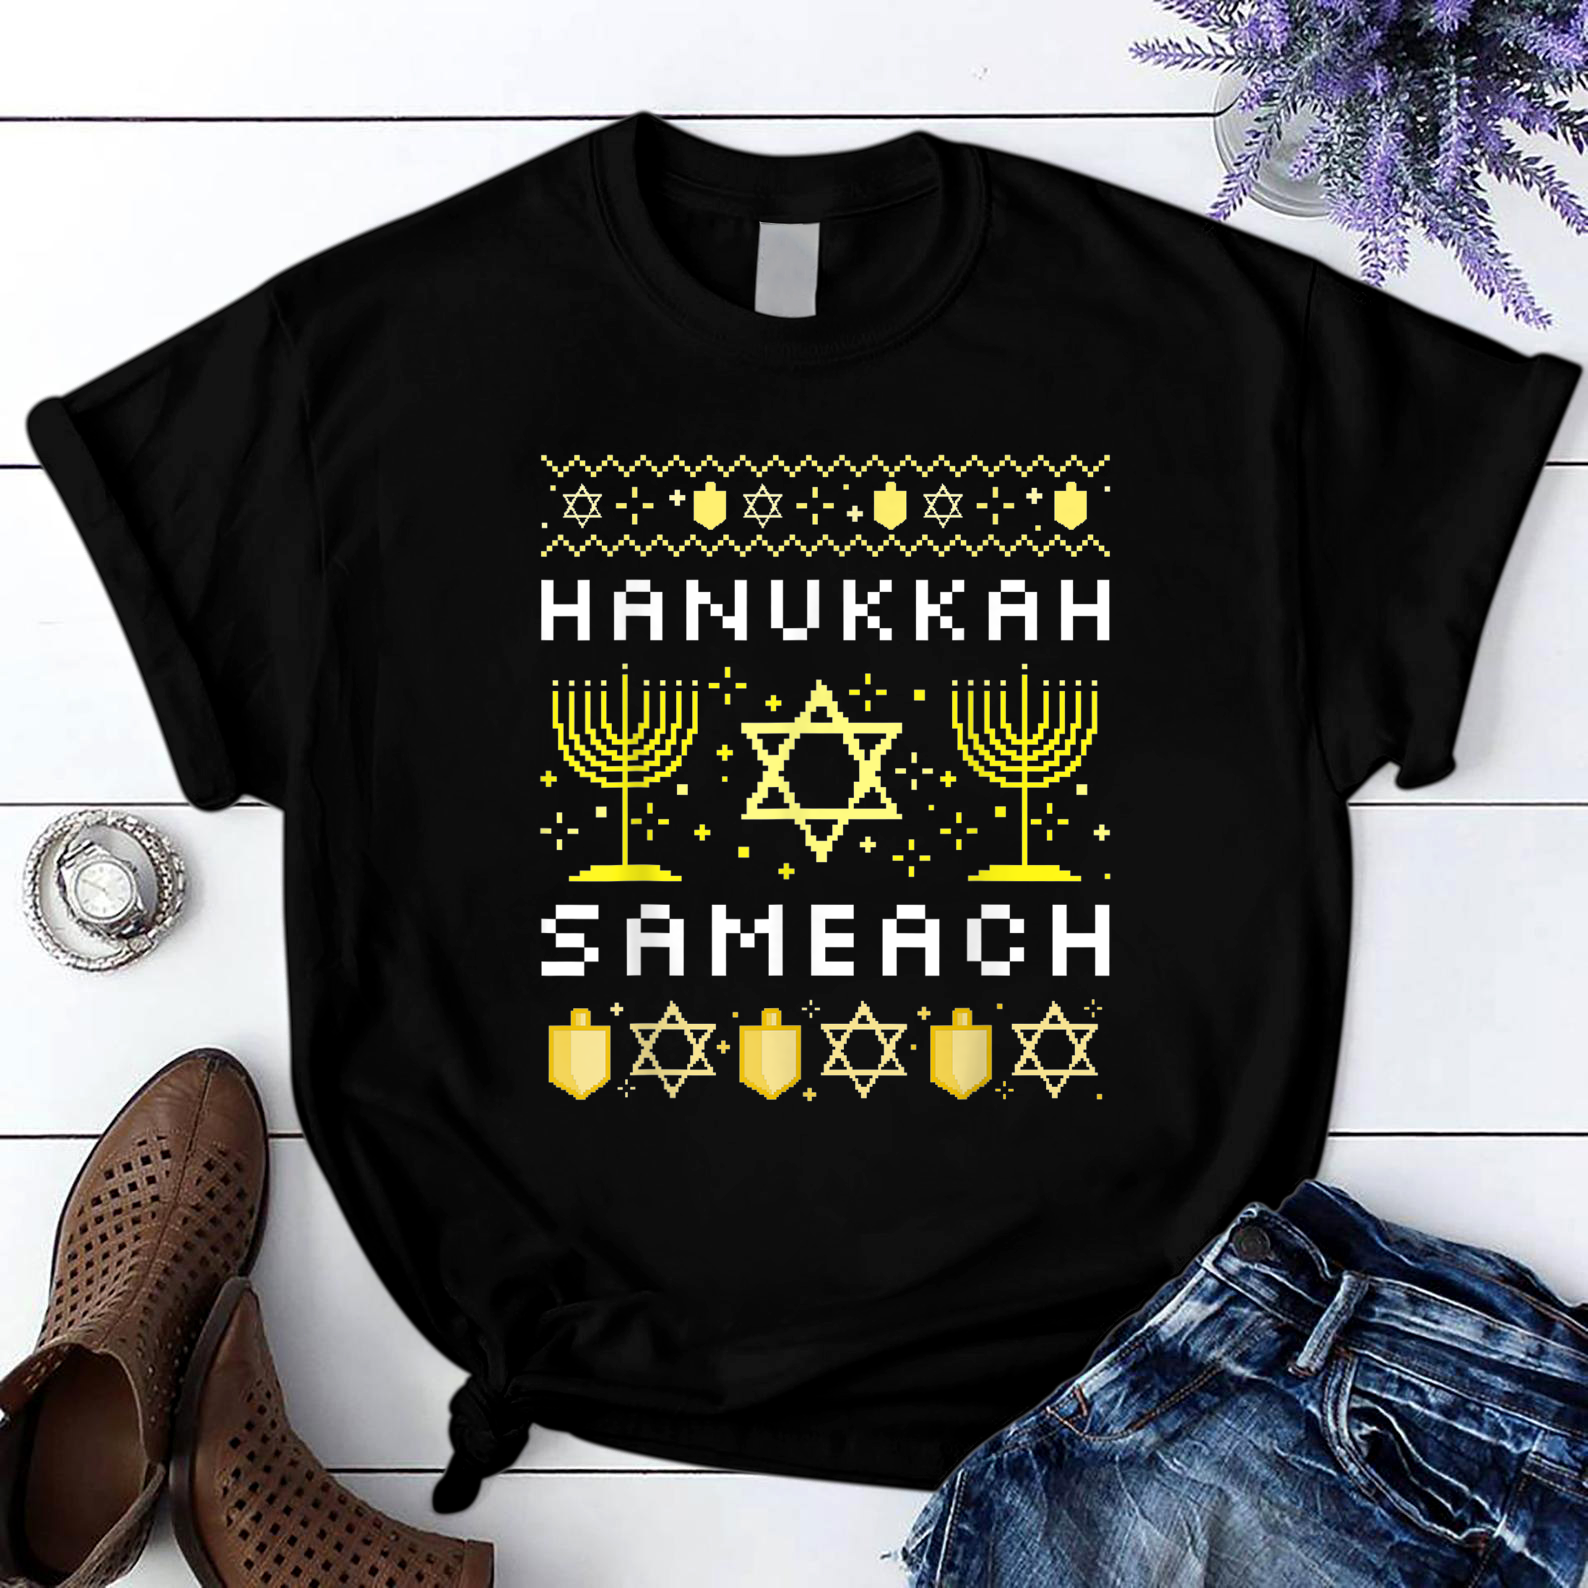 Hanukkah Sameach Happy Hanukkah Jewish Holiday Greetings T Shirt Black Unisex S-6XL